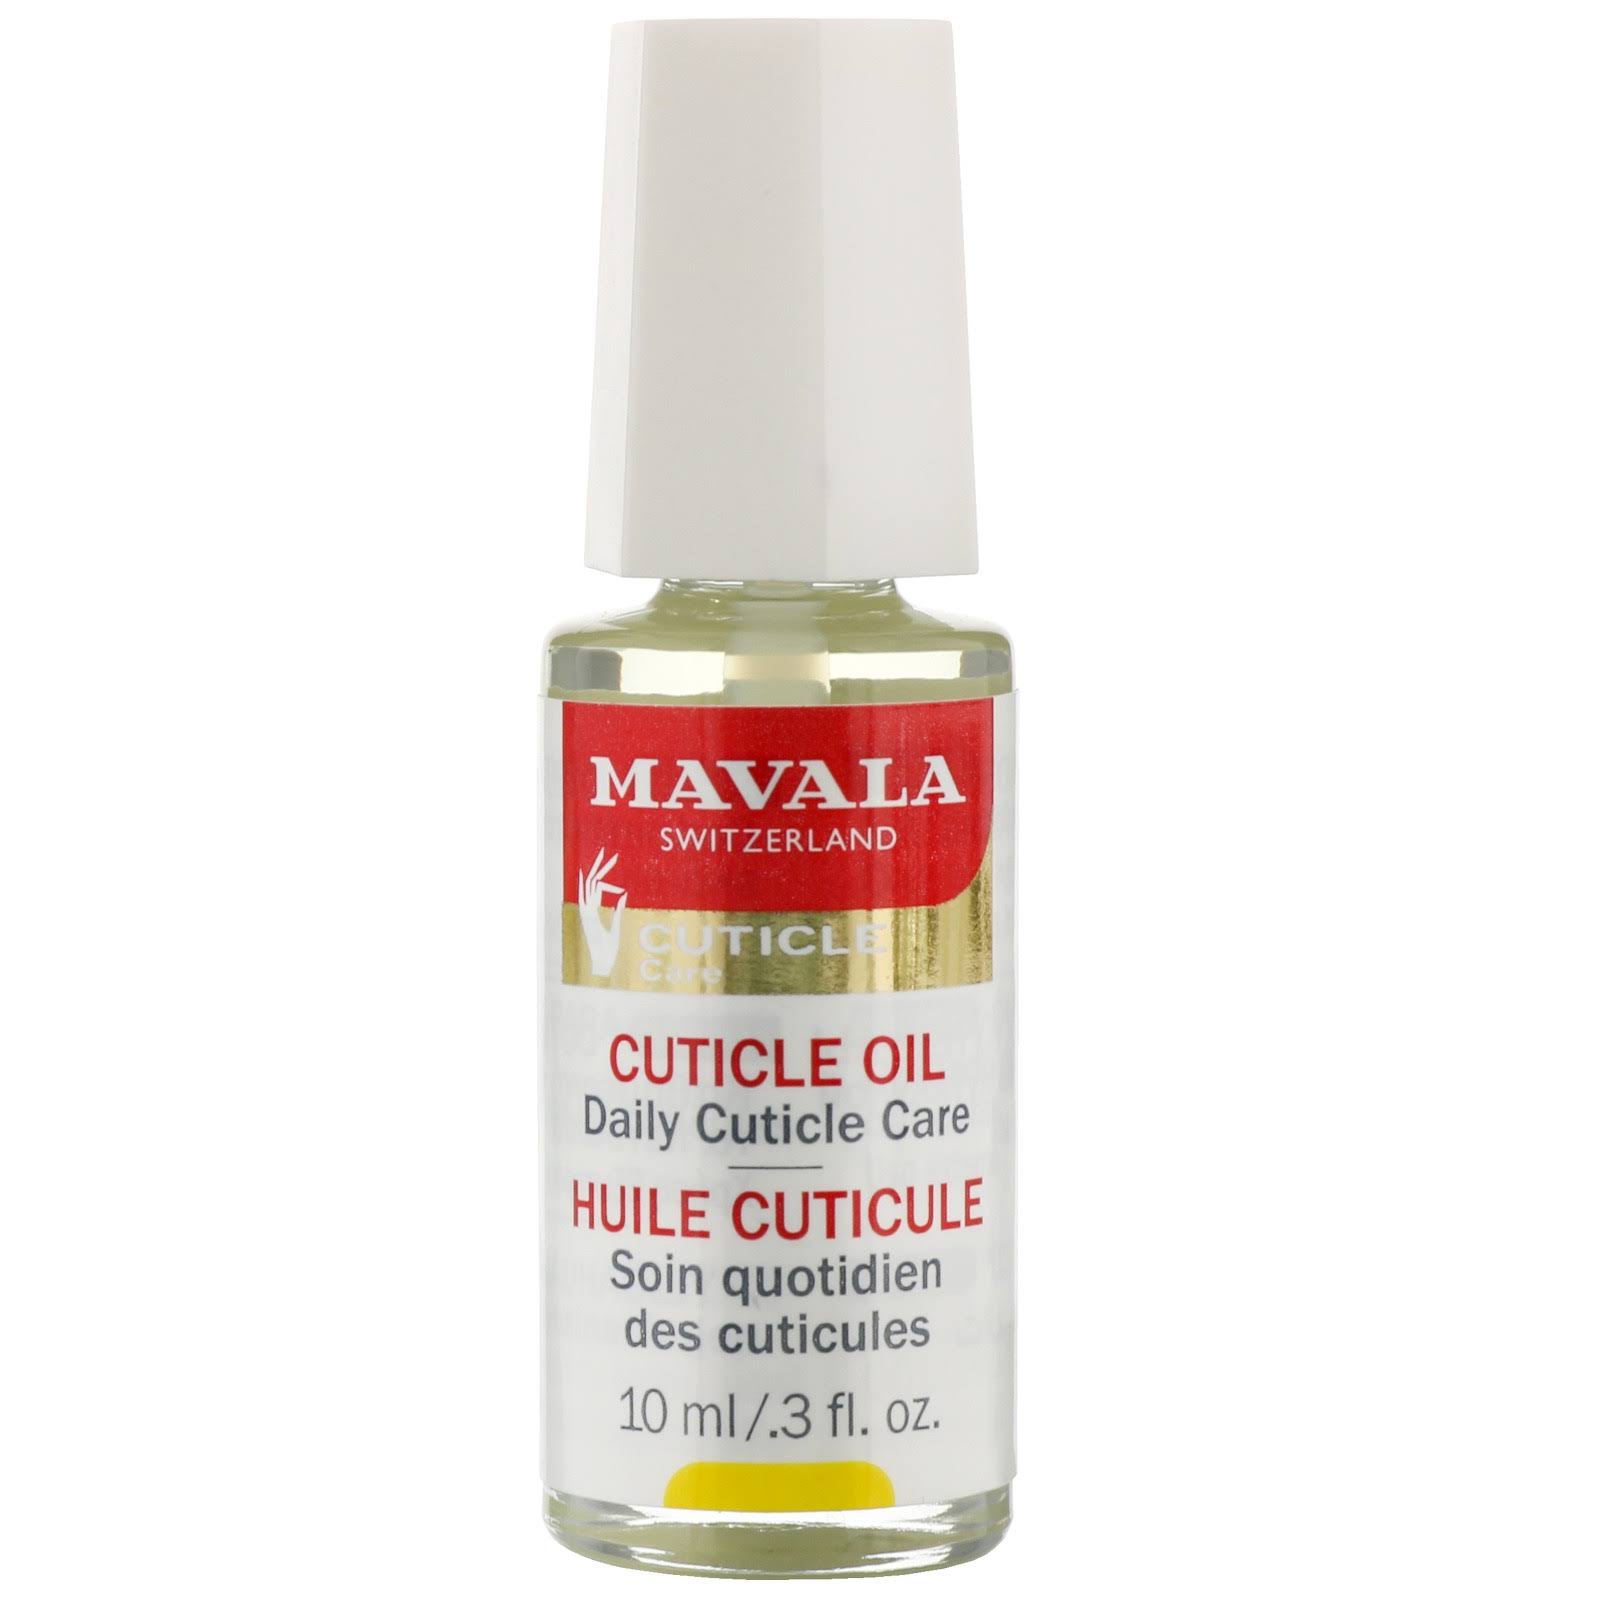 Mavala Cuticle Oil Daily Cuticle Care - 10ml